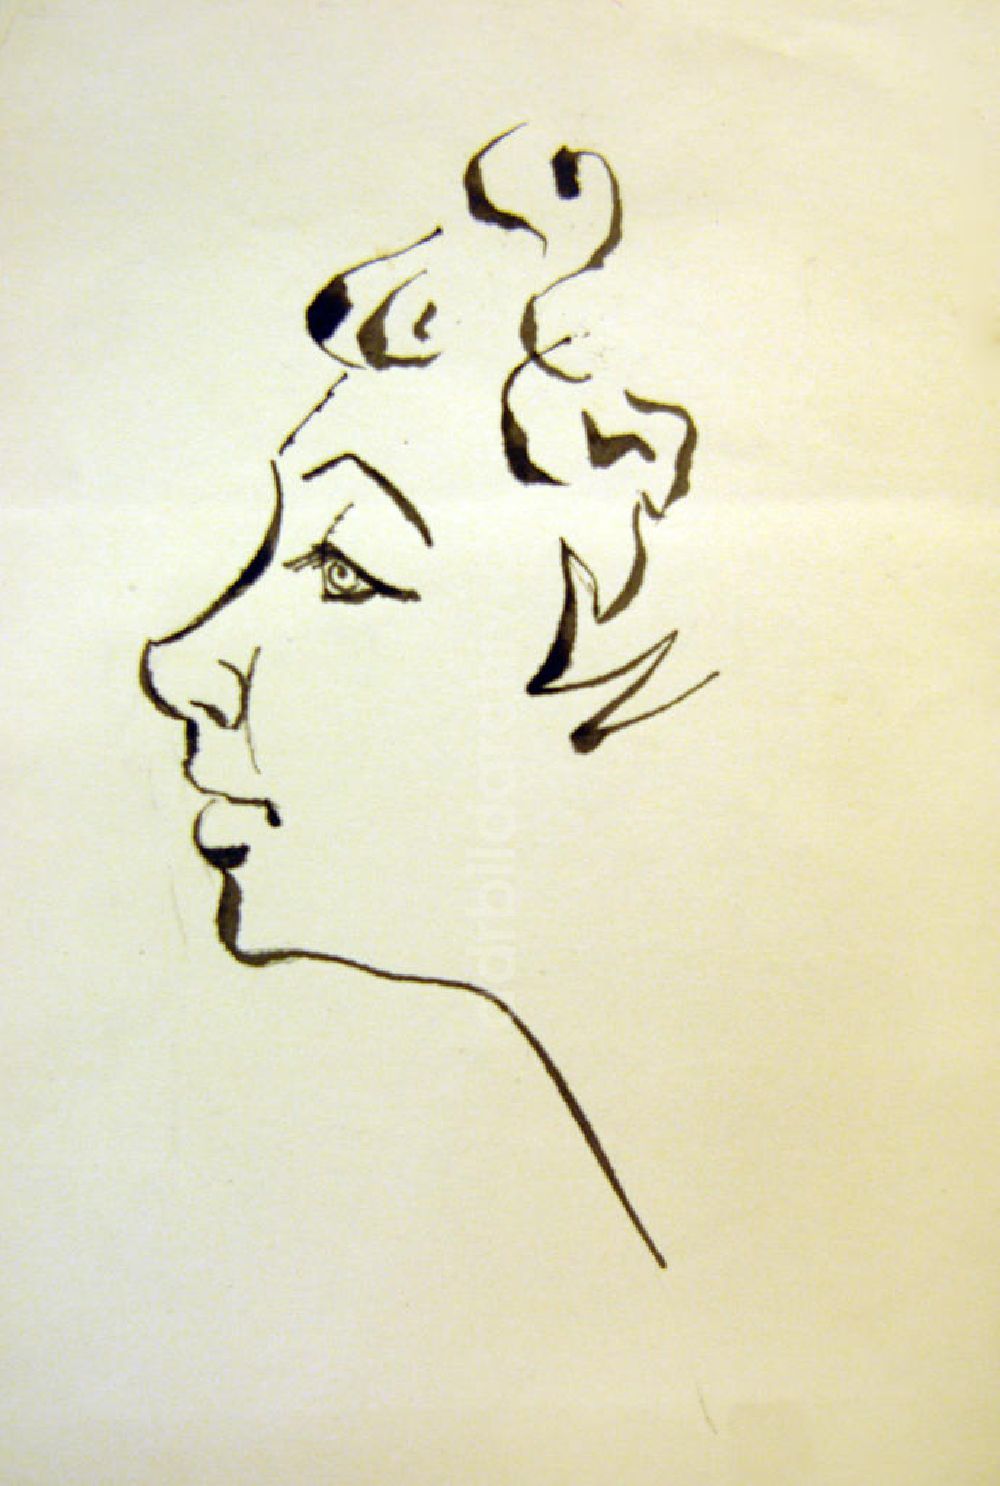 DDR-Fotoarchiv: Berlin - Zeichnung von Herbert Sandberg Frau im Profil